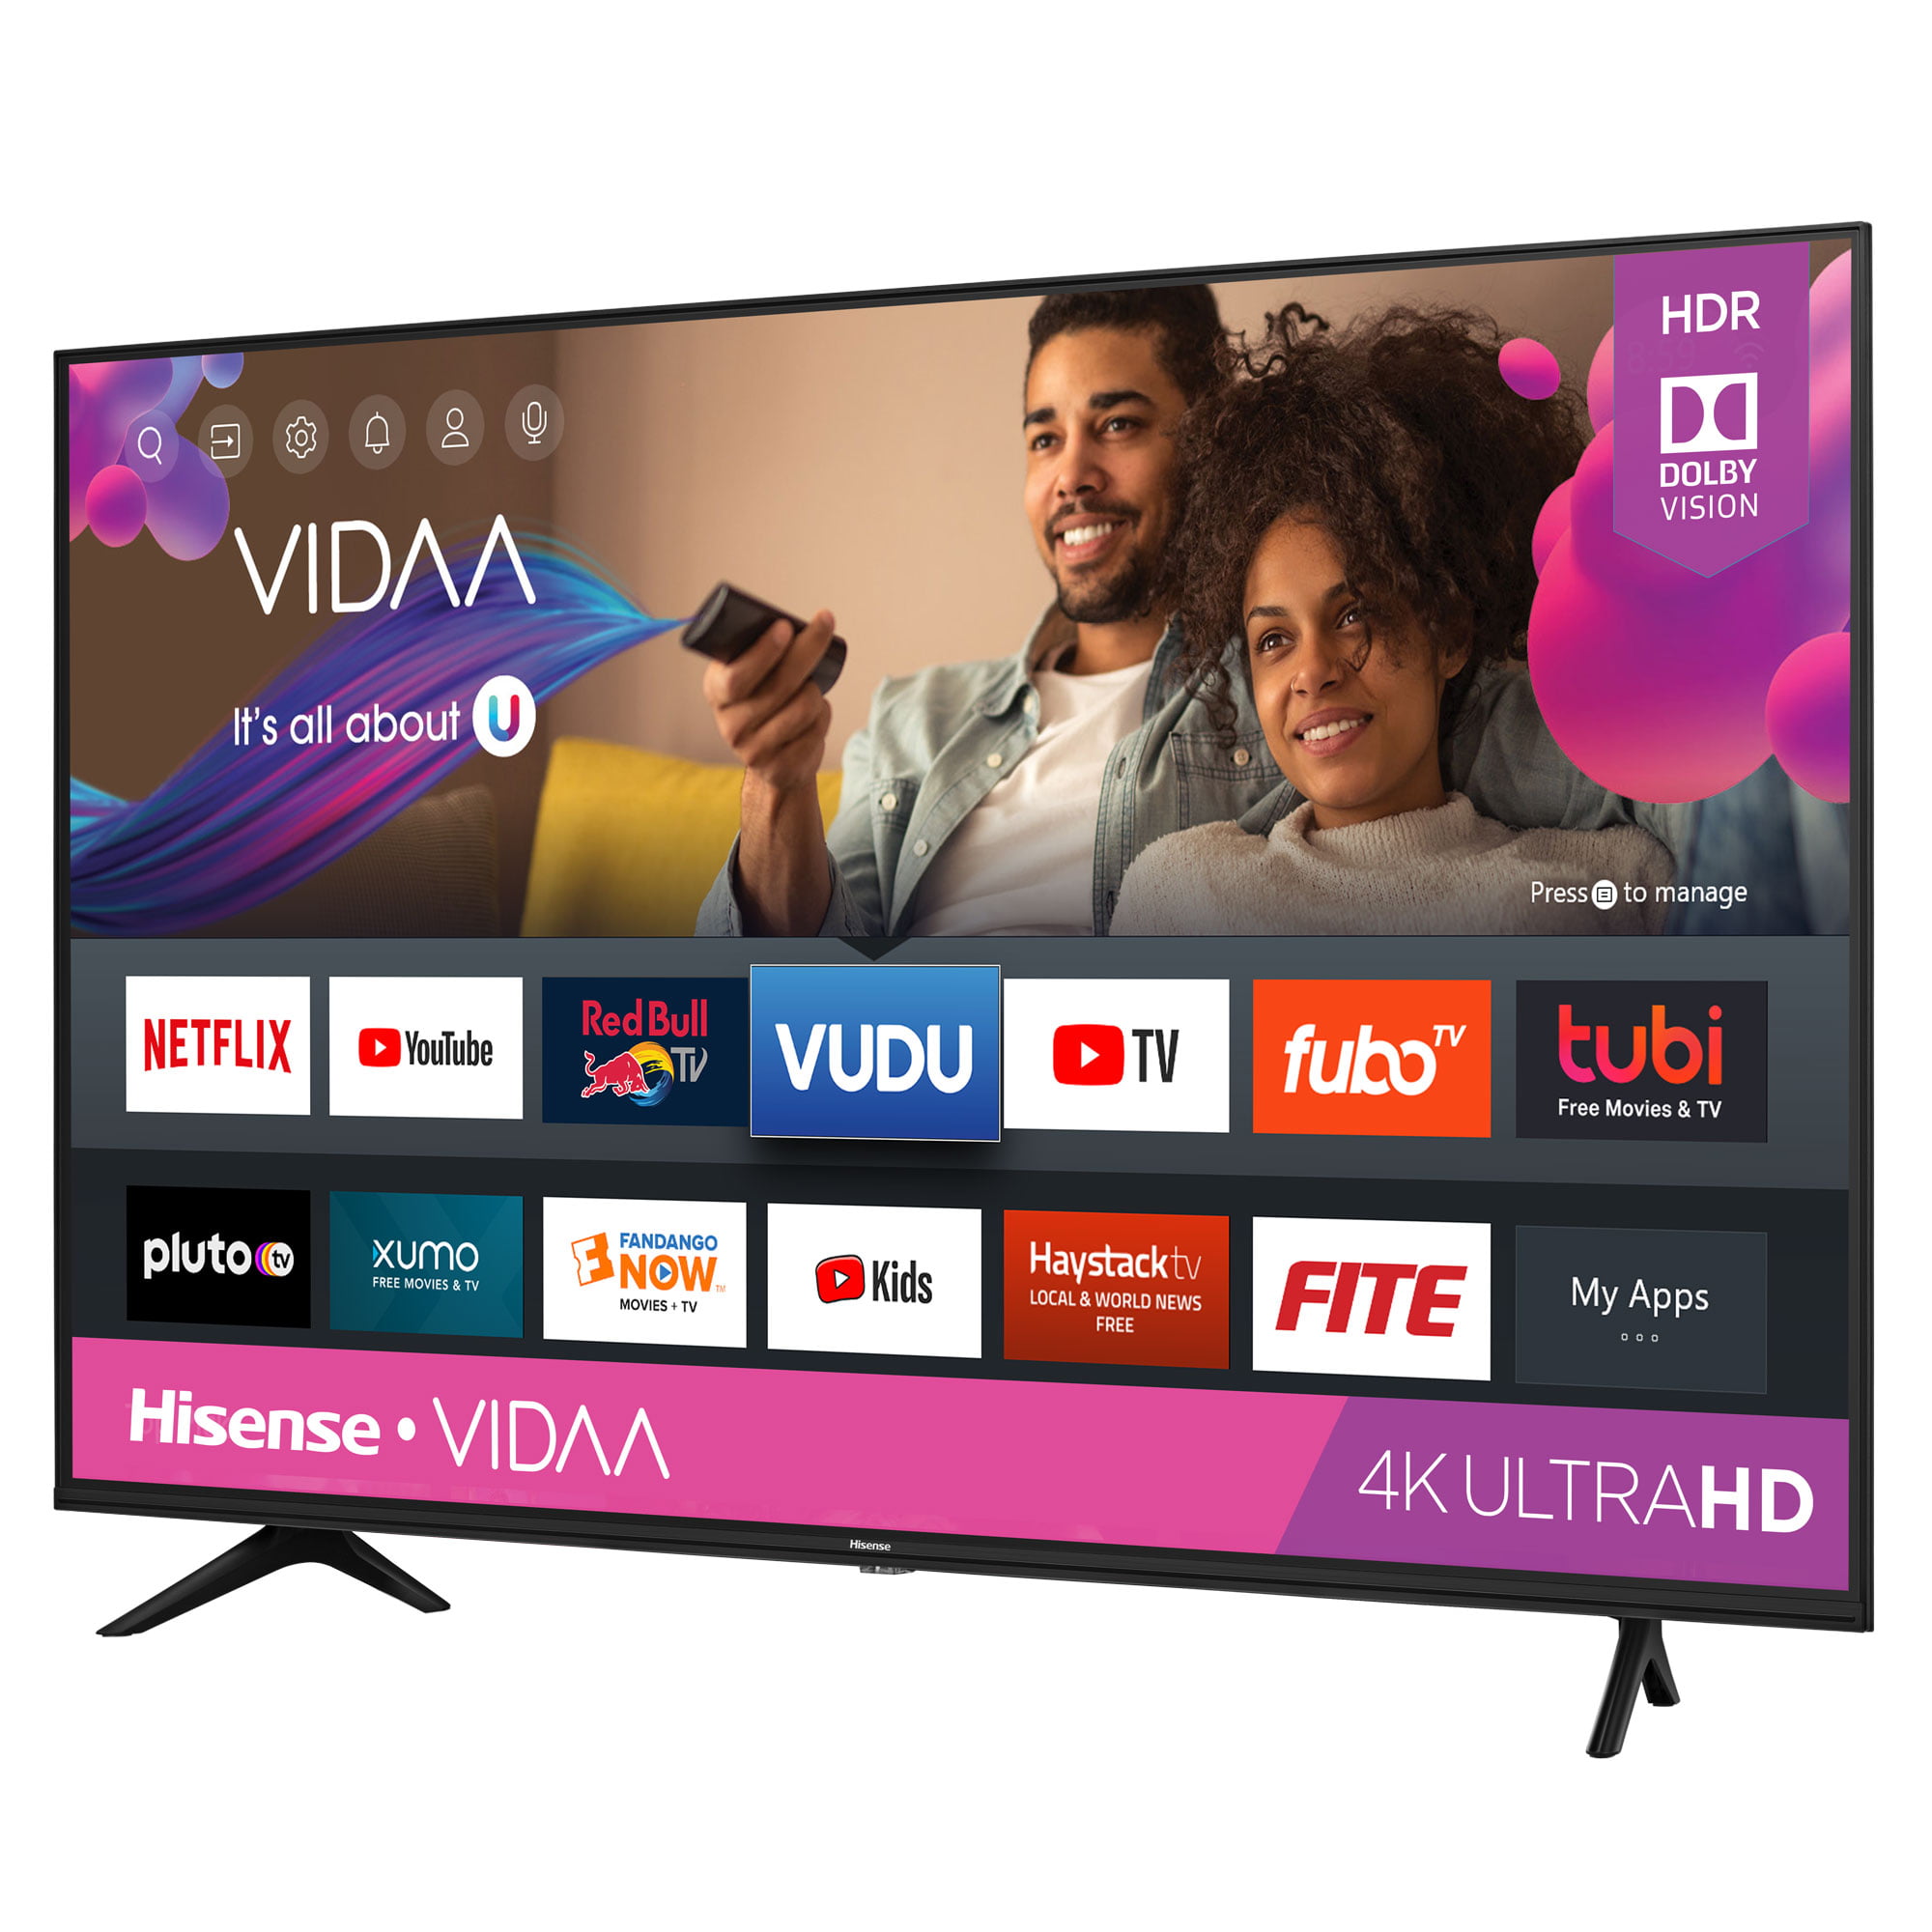 Hisense 50 Inch Vidaa A6 Series 4k Ultra Hd Smart Tv Walmart Com Walmart Com